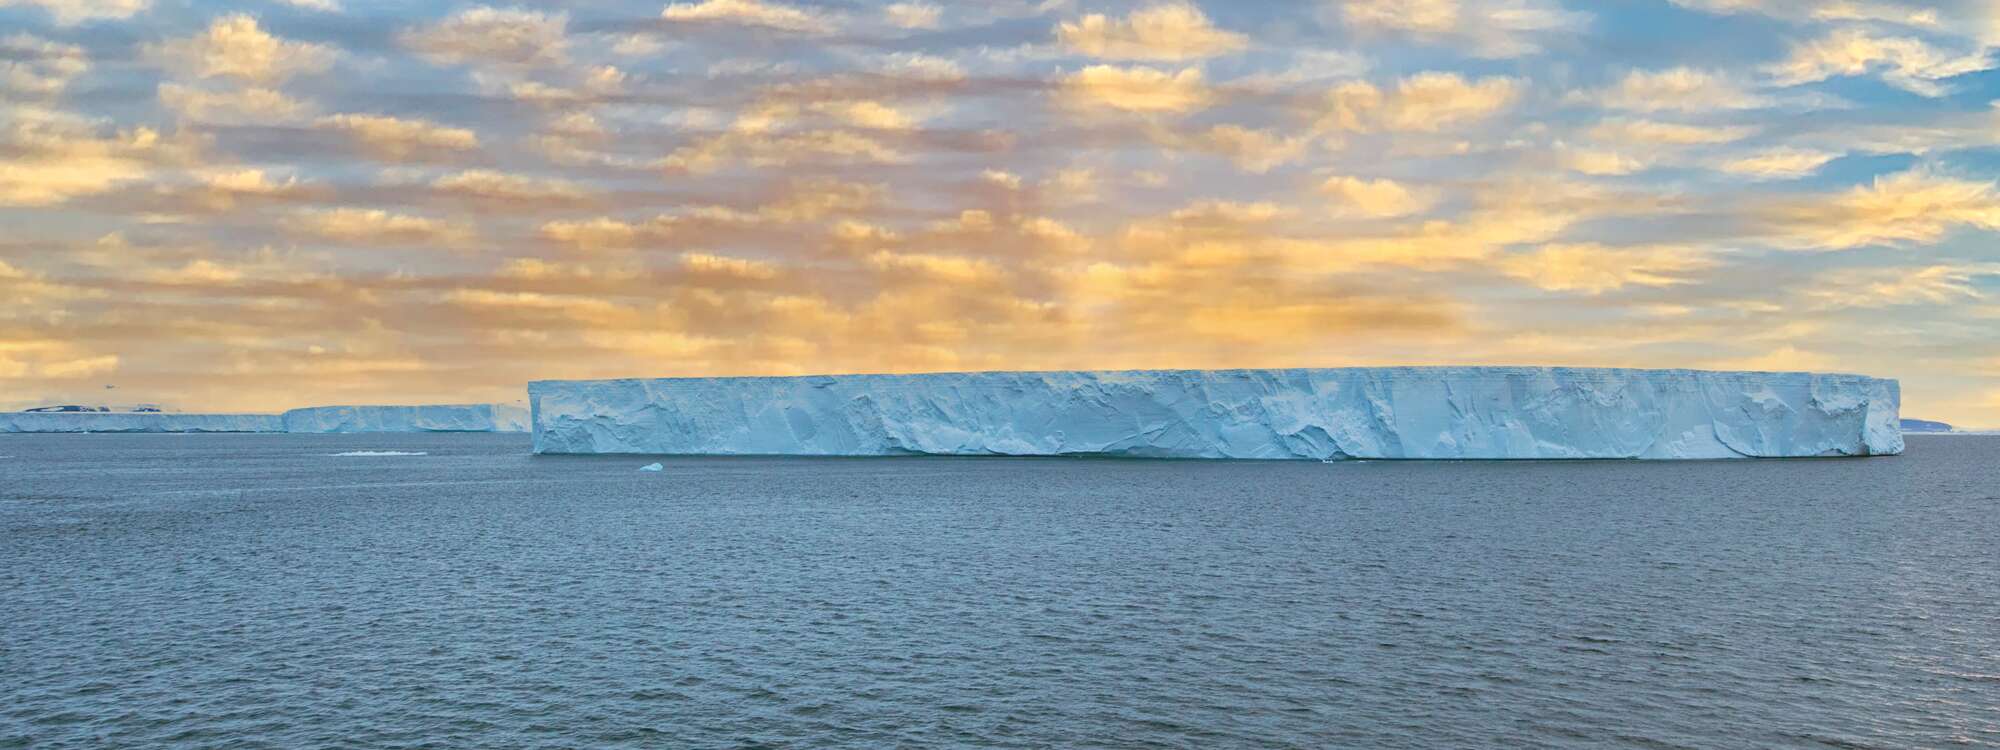 Eisberg, Bransfield Strait, zwischen den Südlichen Shetlandinseln und der Antarktischen Halbinsel in der Region Antarktis